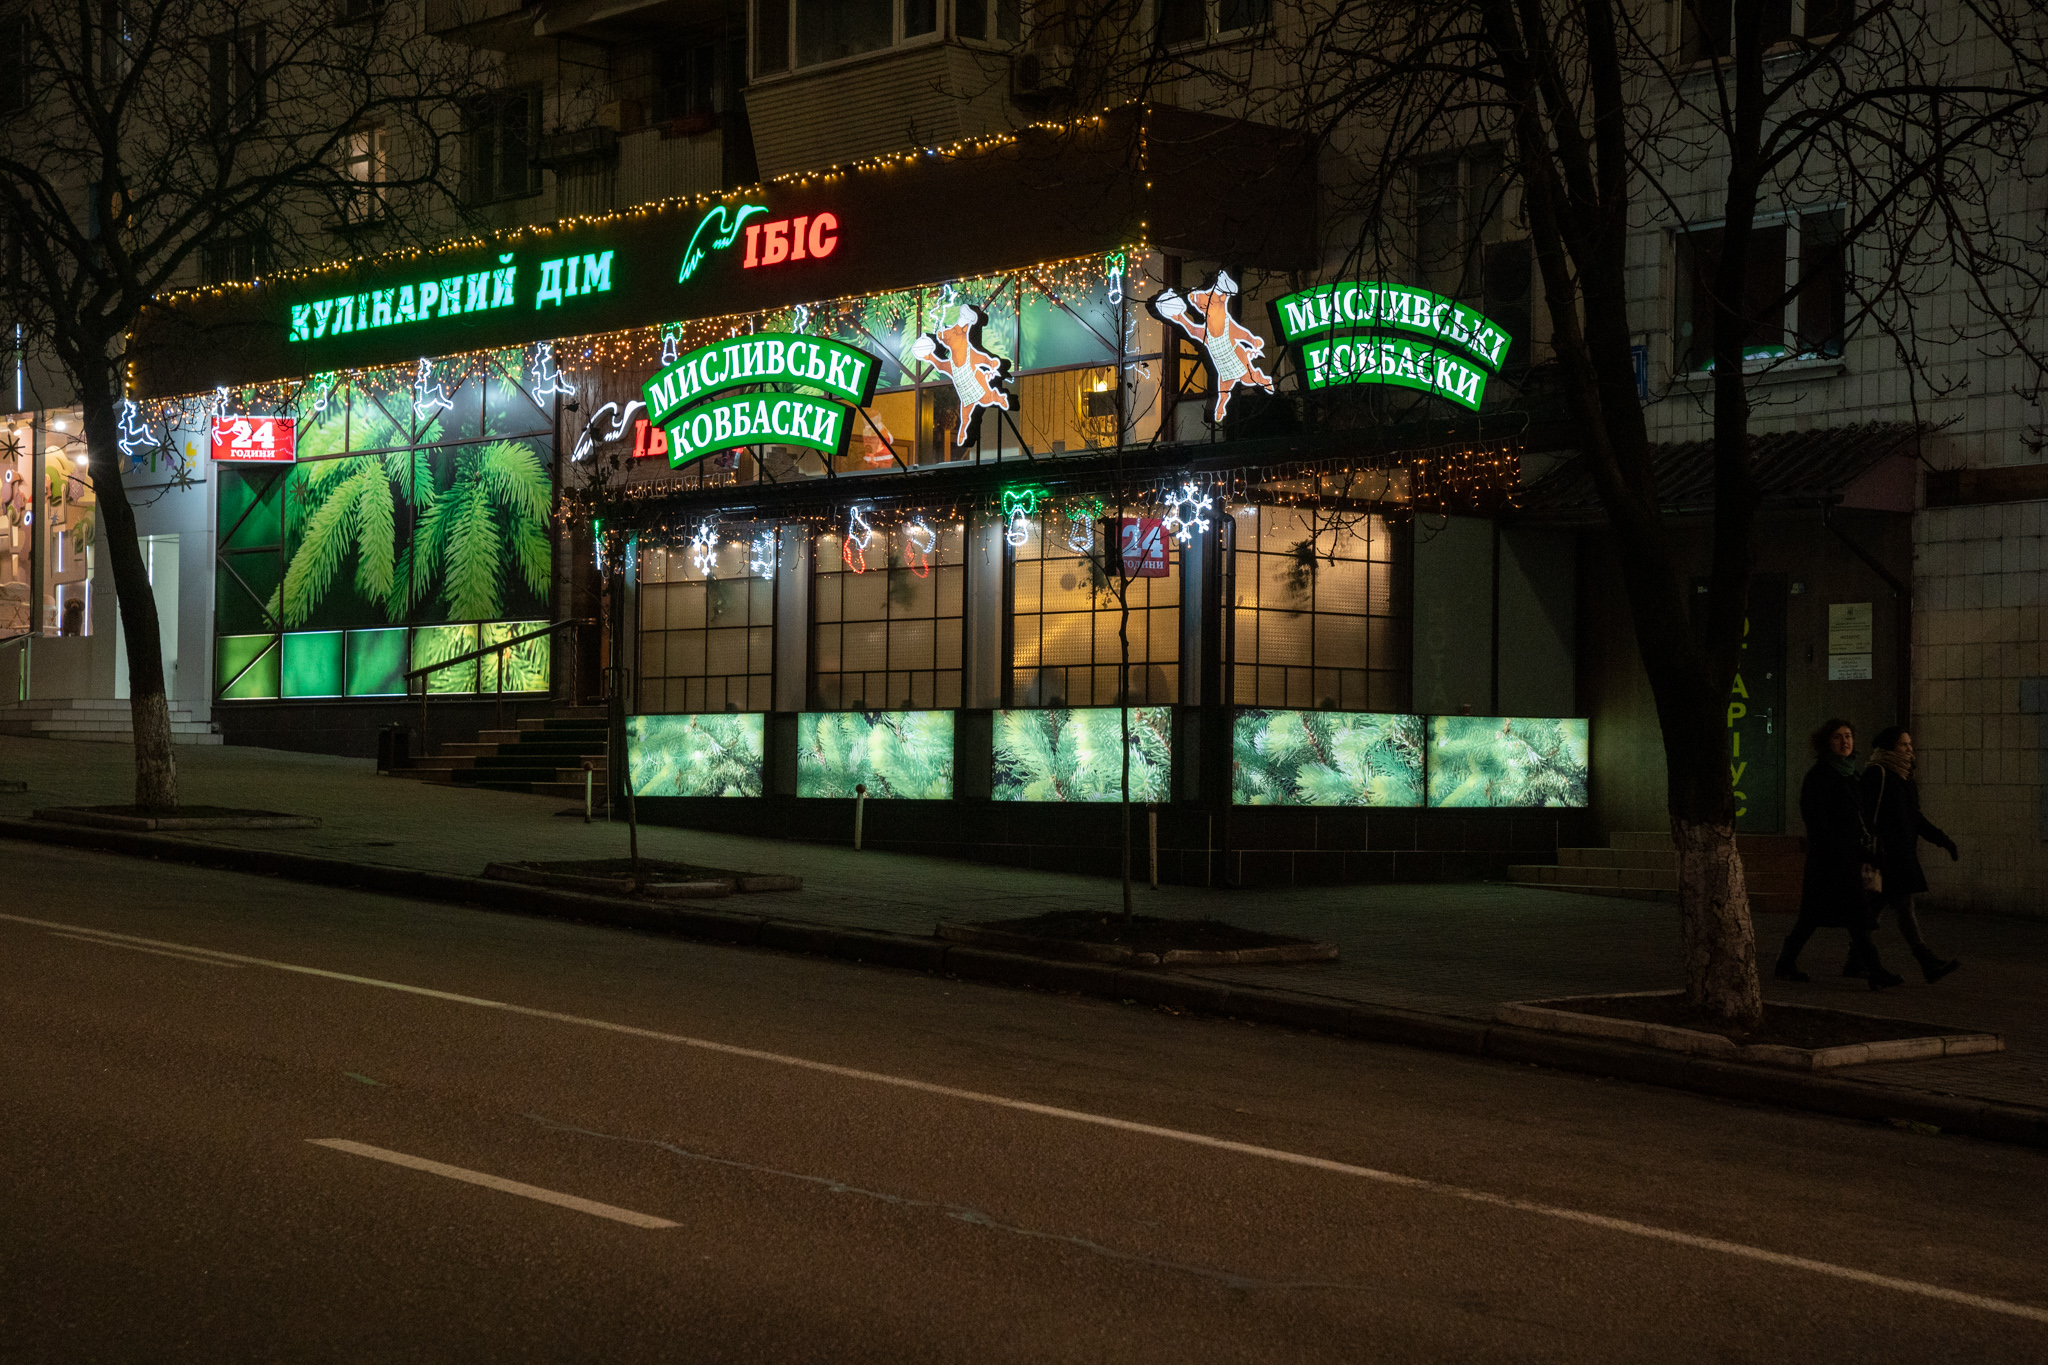 Київ. Магазин "ІБІС" — Lumiere | Світлова ілюмінація | Україна